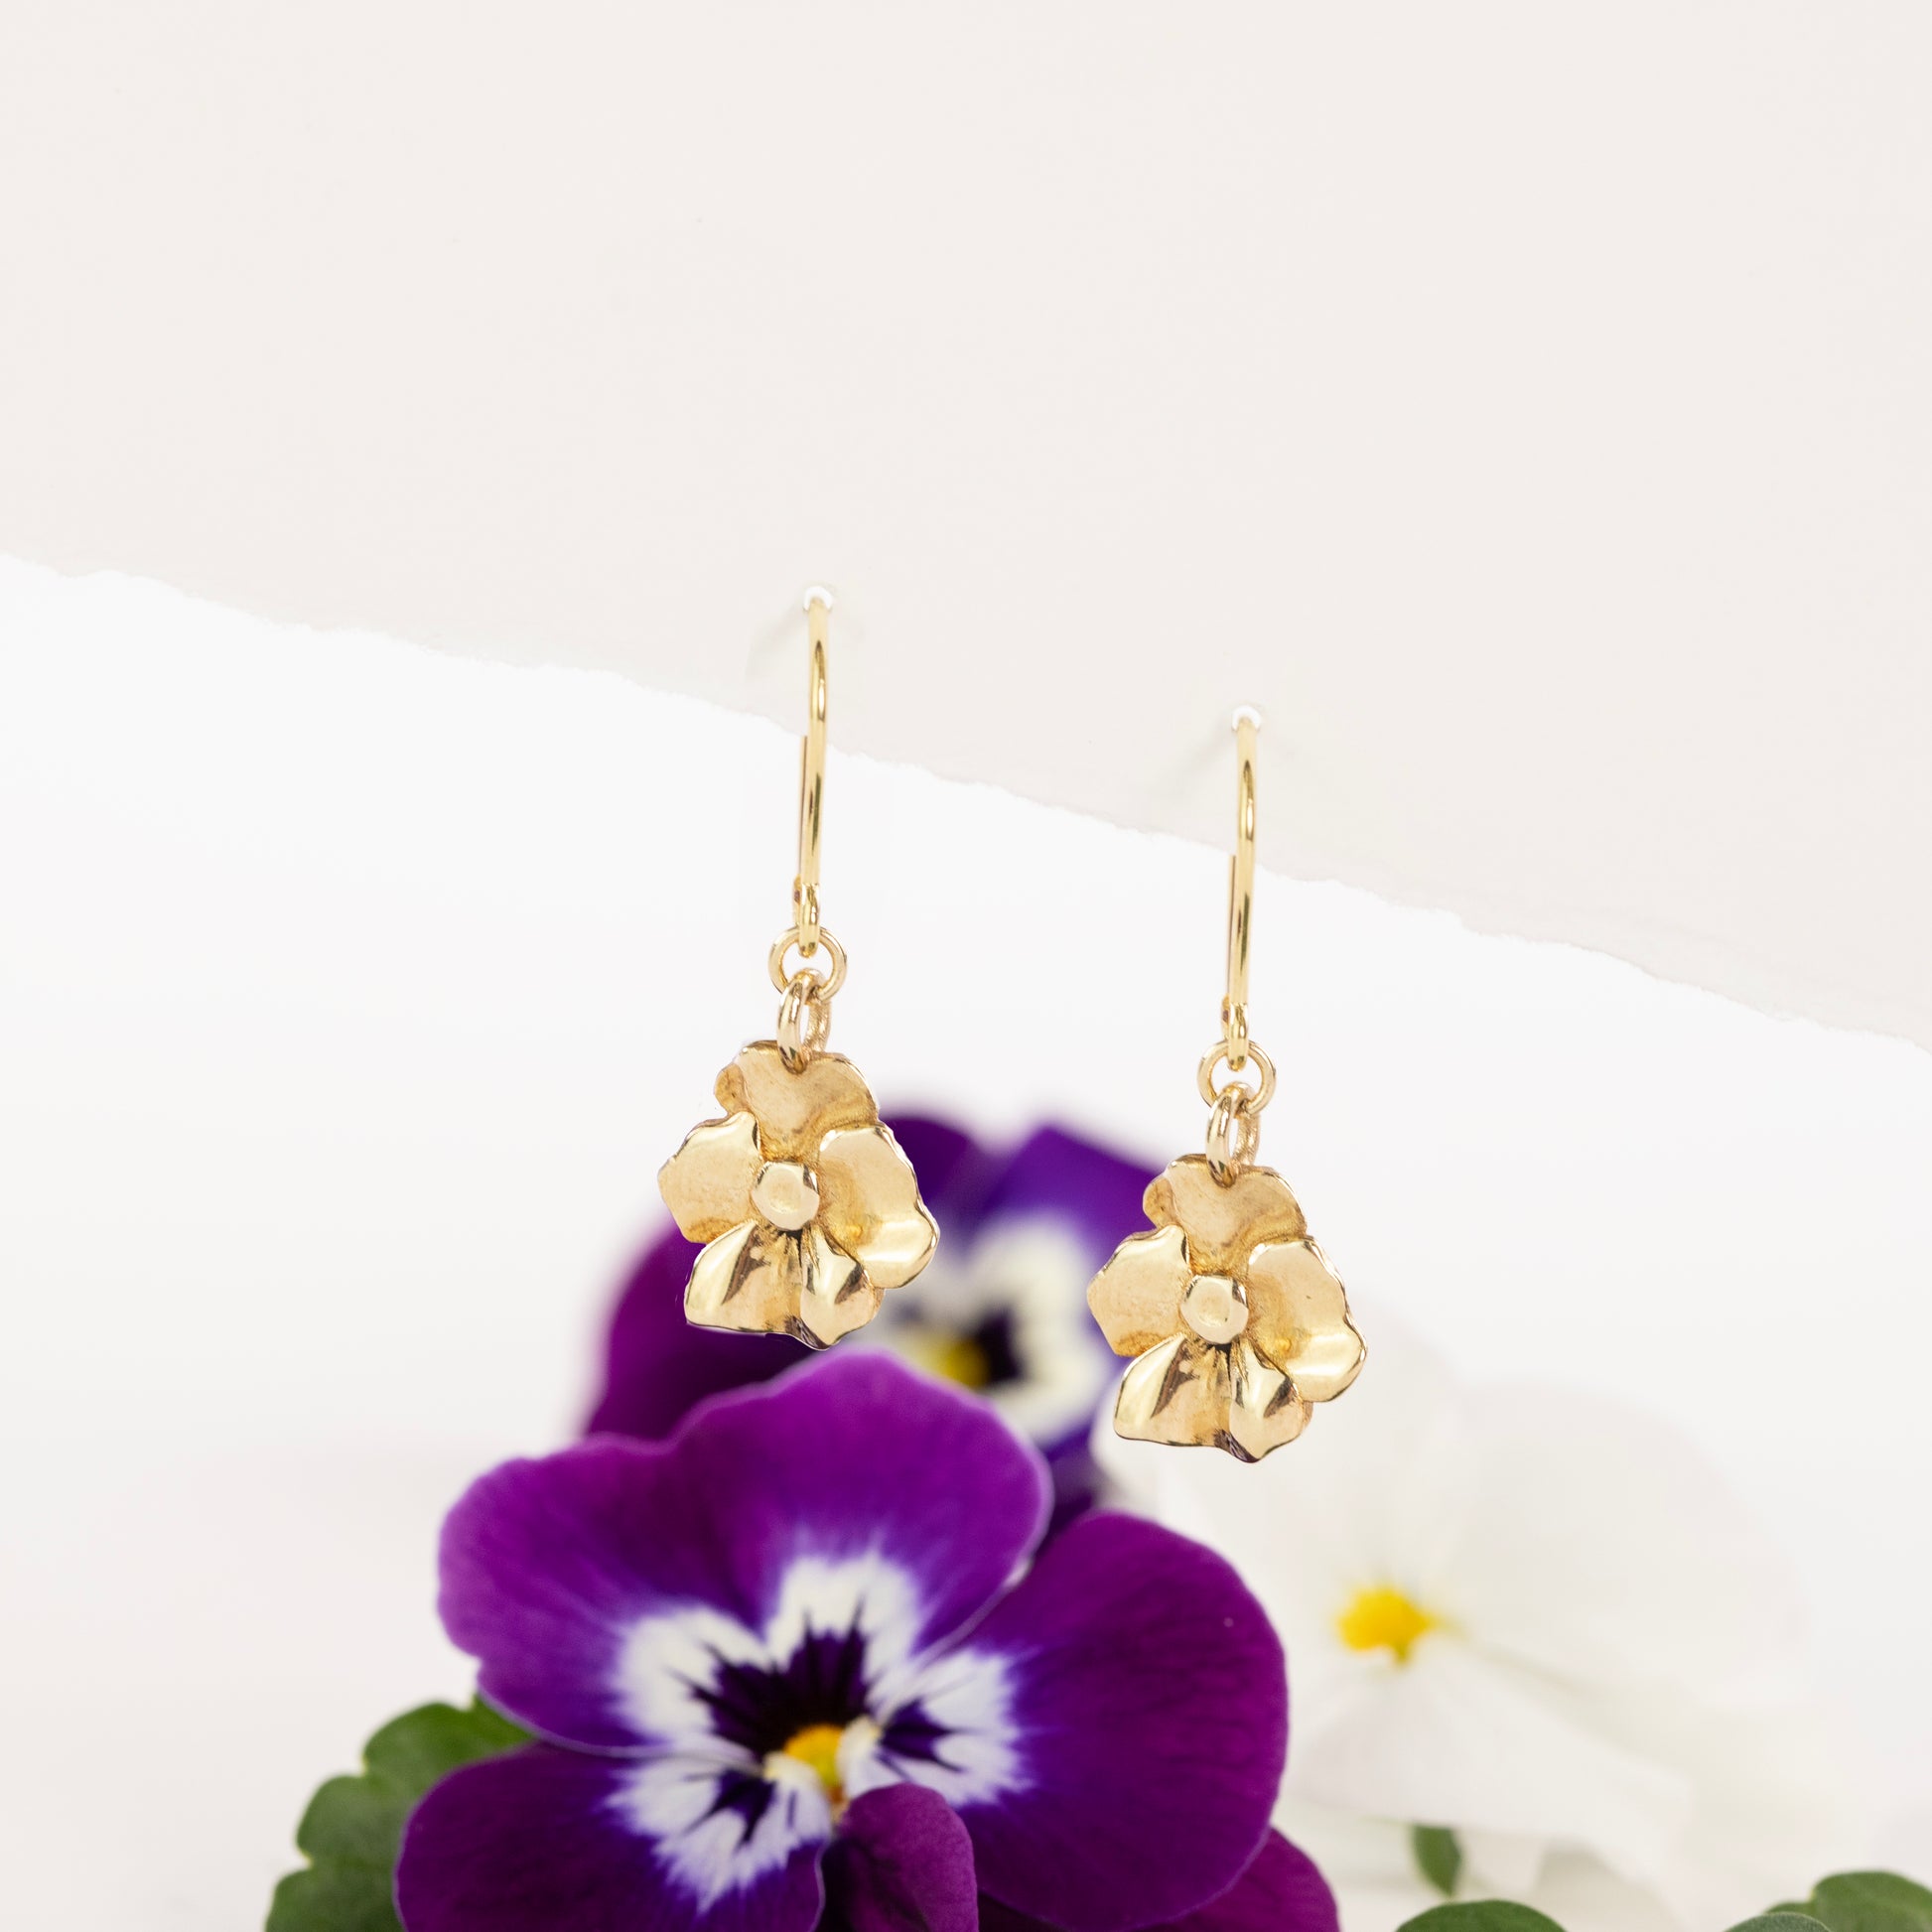 February Birth Flower Earrings - Violet - 9kt Gold